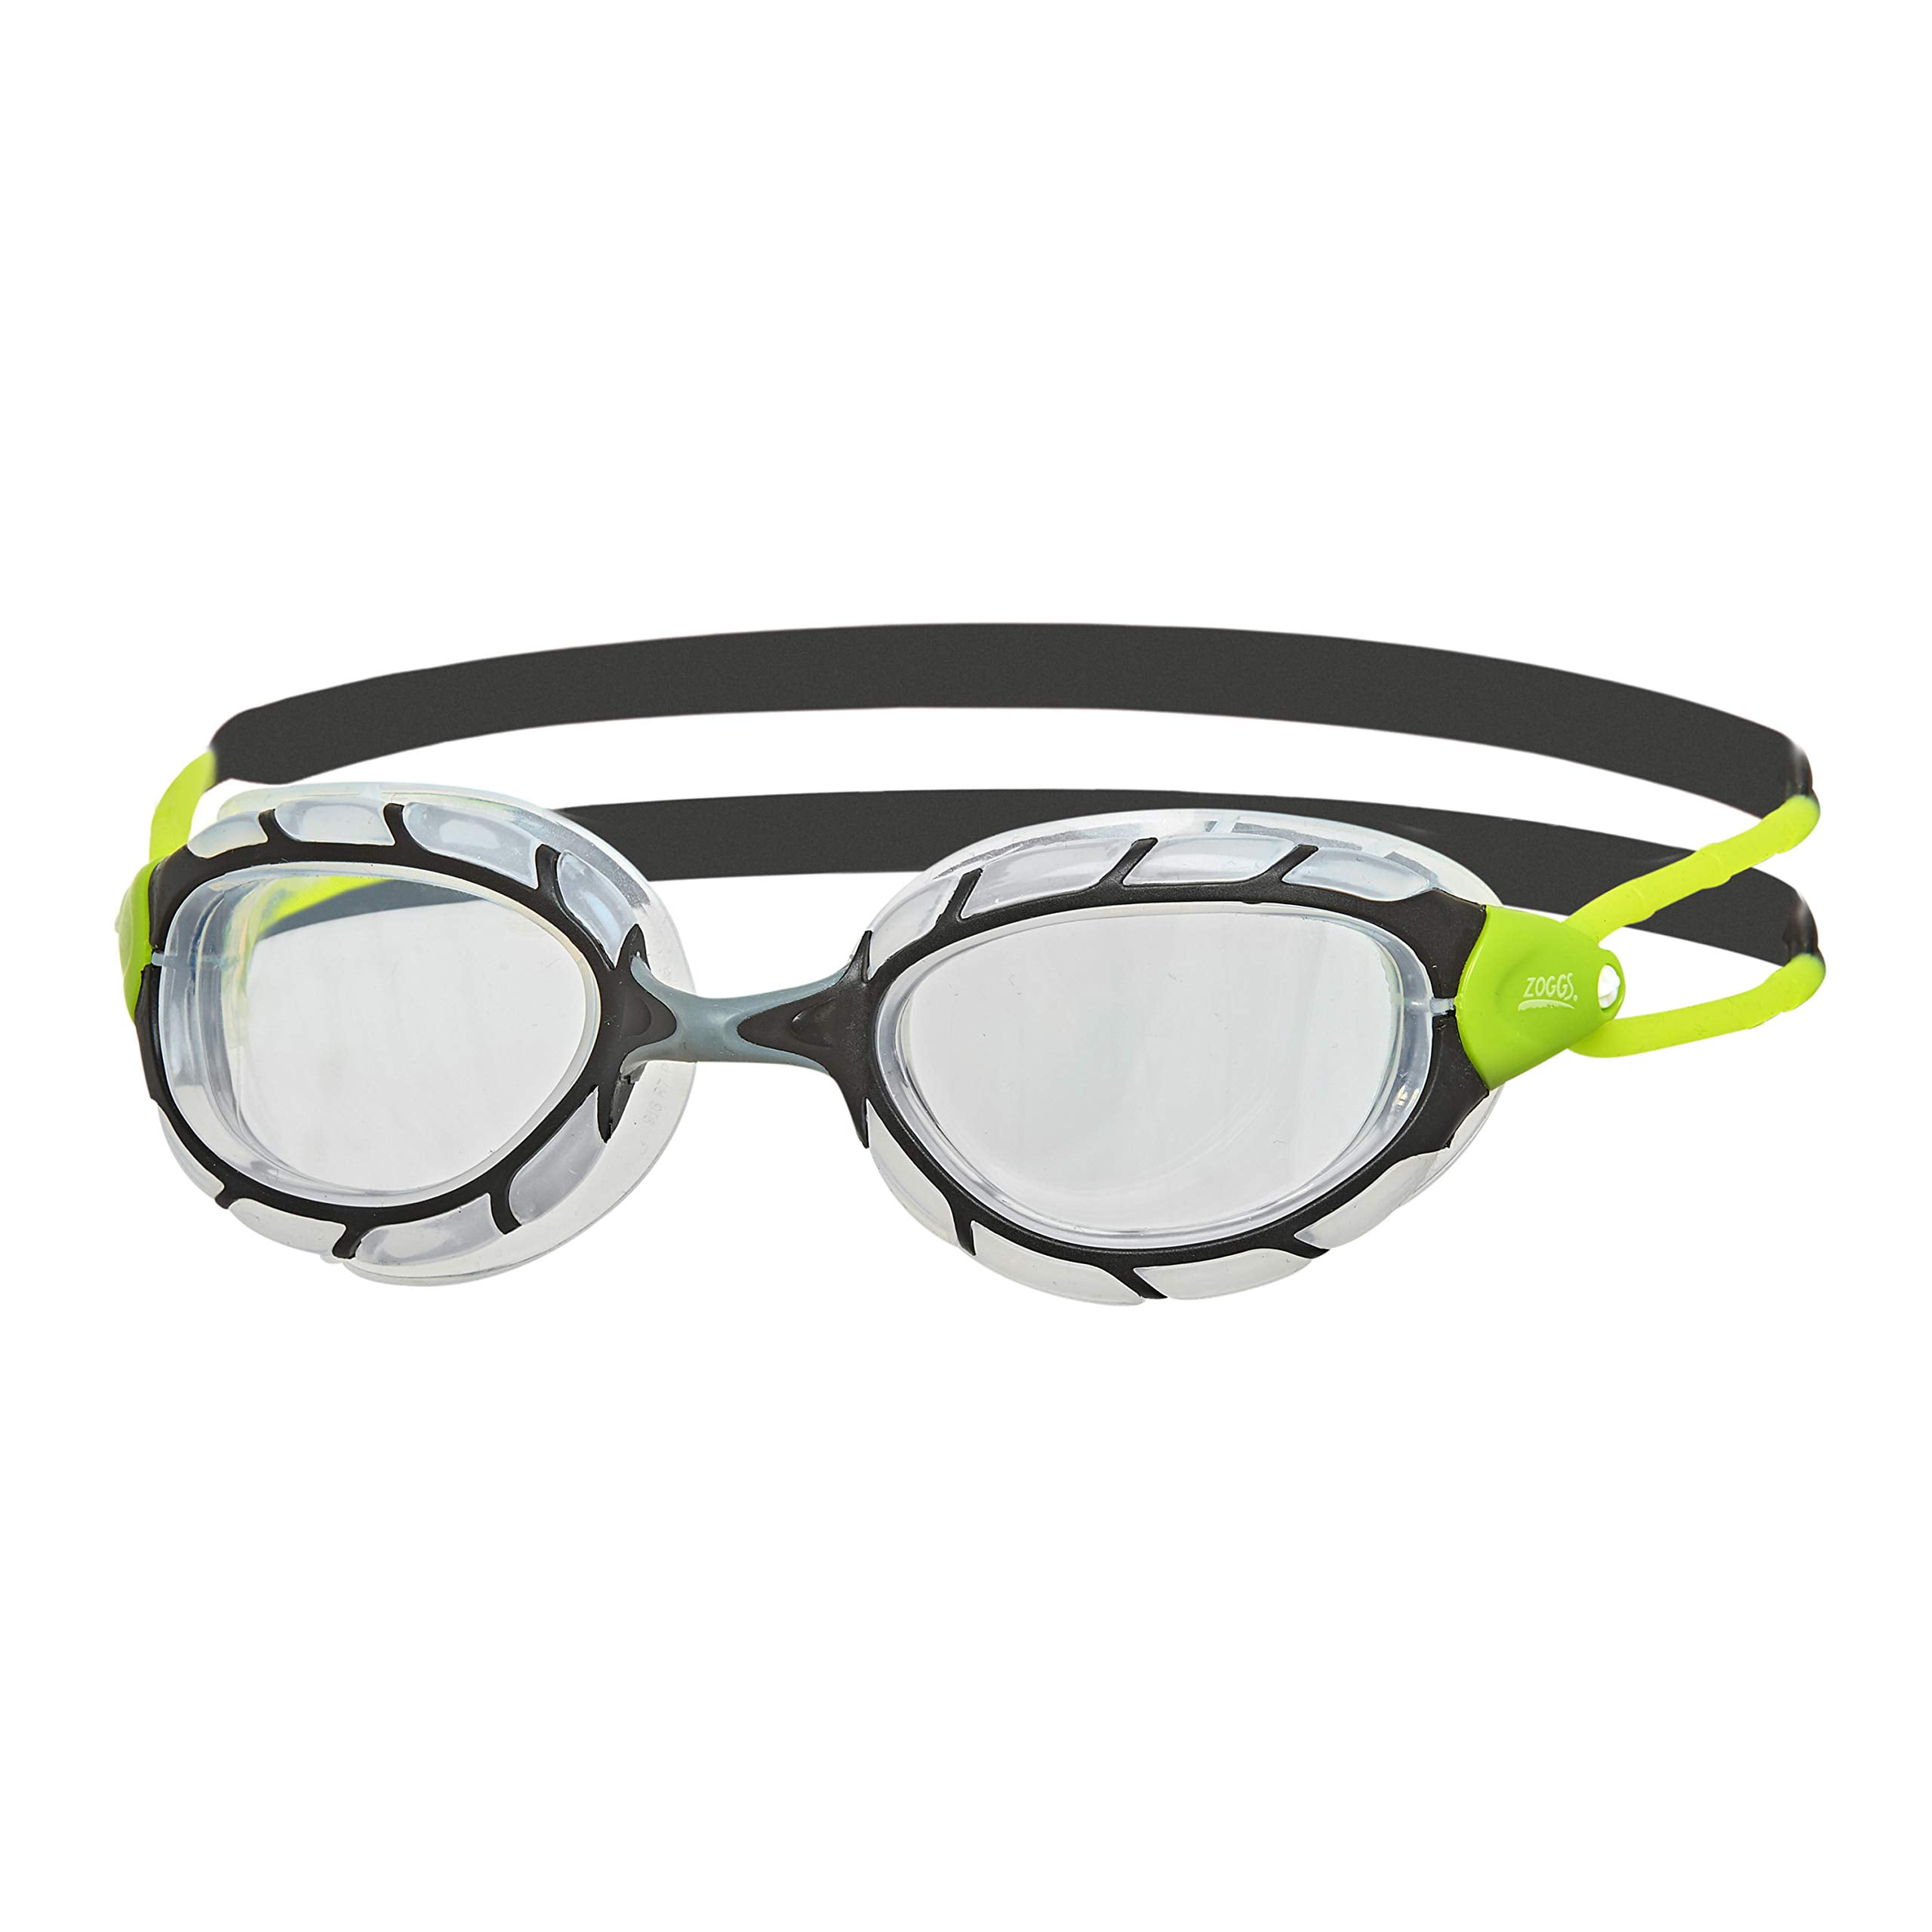 Zoggs Predator Silver-Blue Swimming Goggles